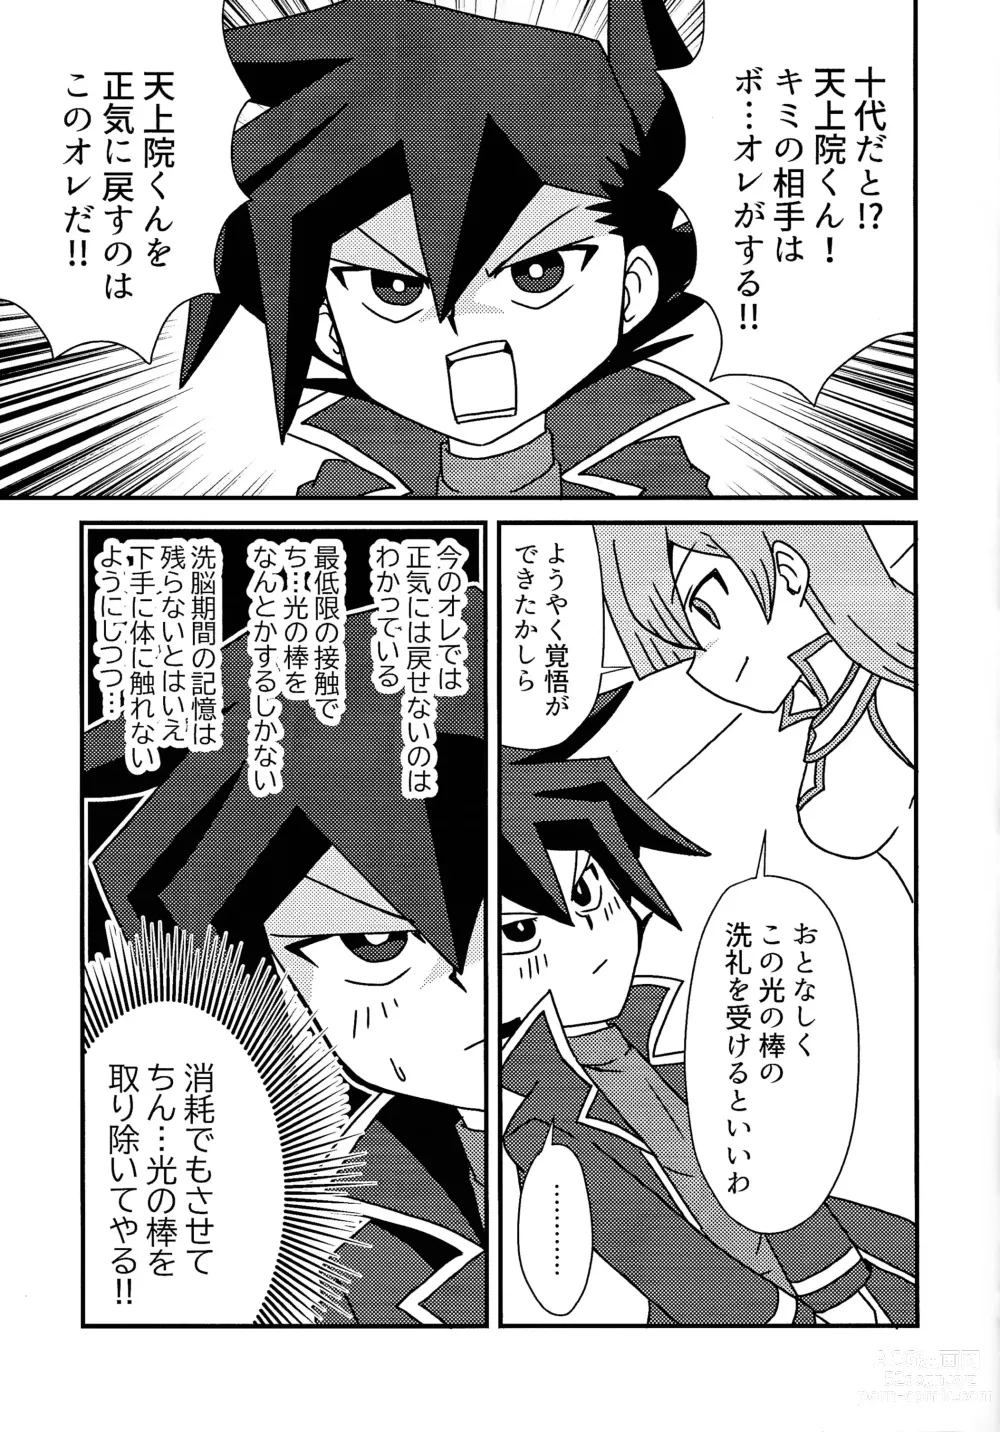 Page 6 of doujinshi Kuro no ore ga mata shiroku some rareyou to shite iru yodaga!?